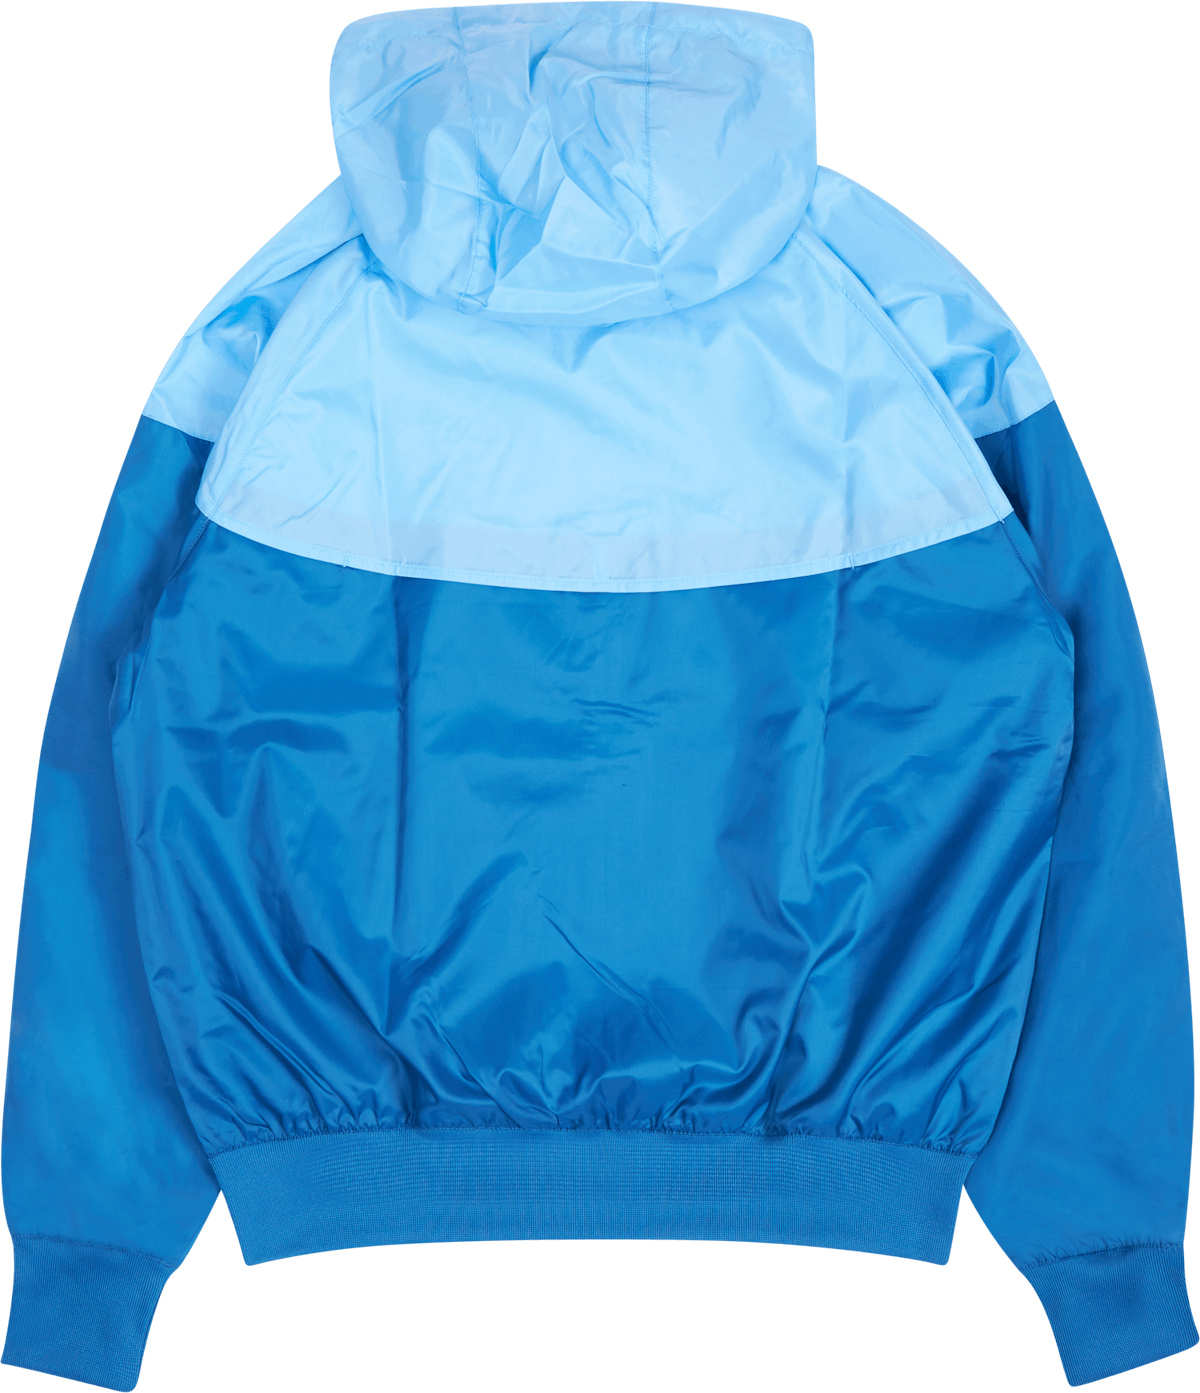 NSW Hooded Windrunner Jacket